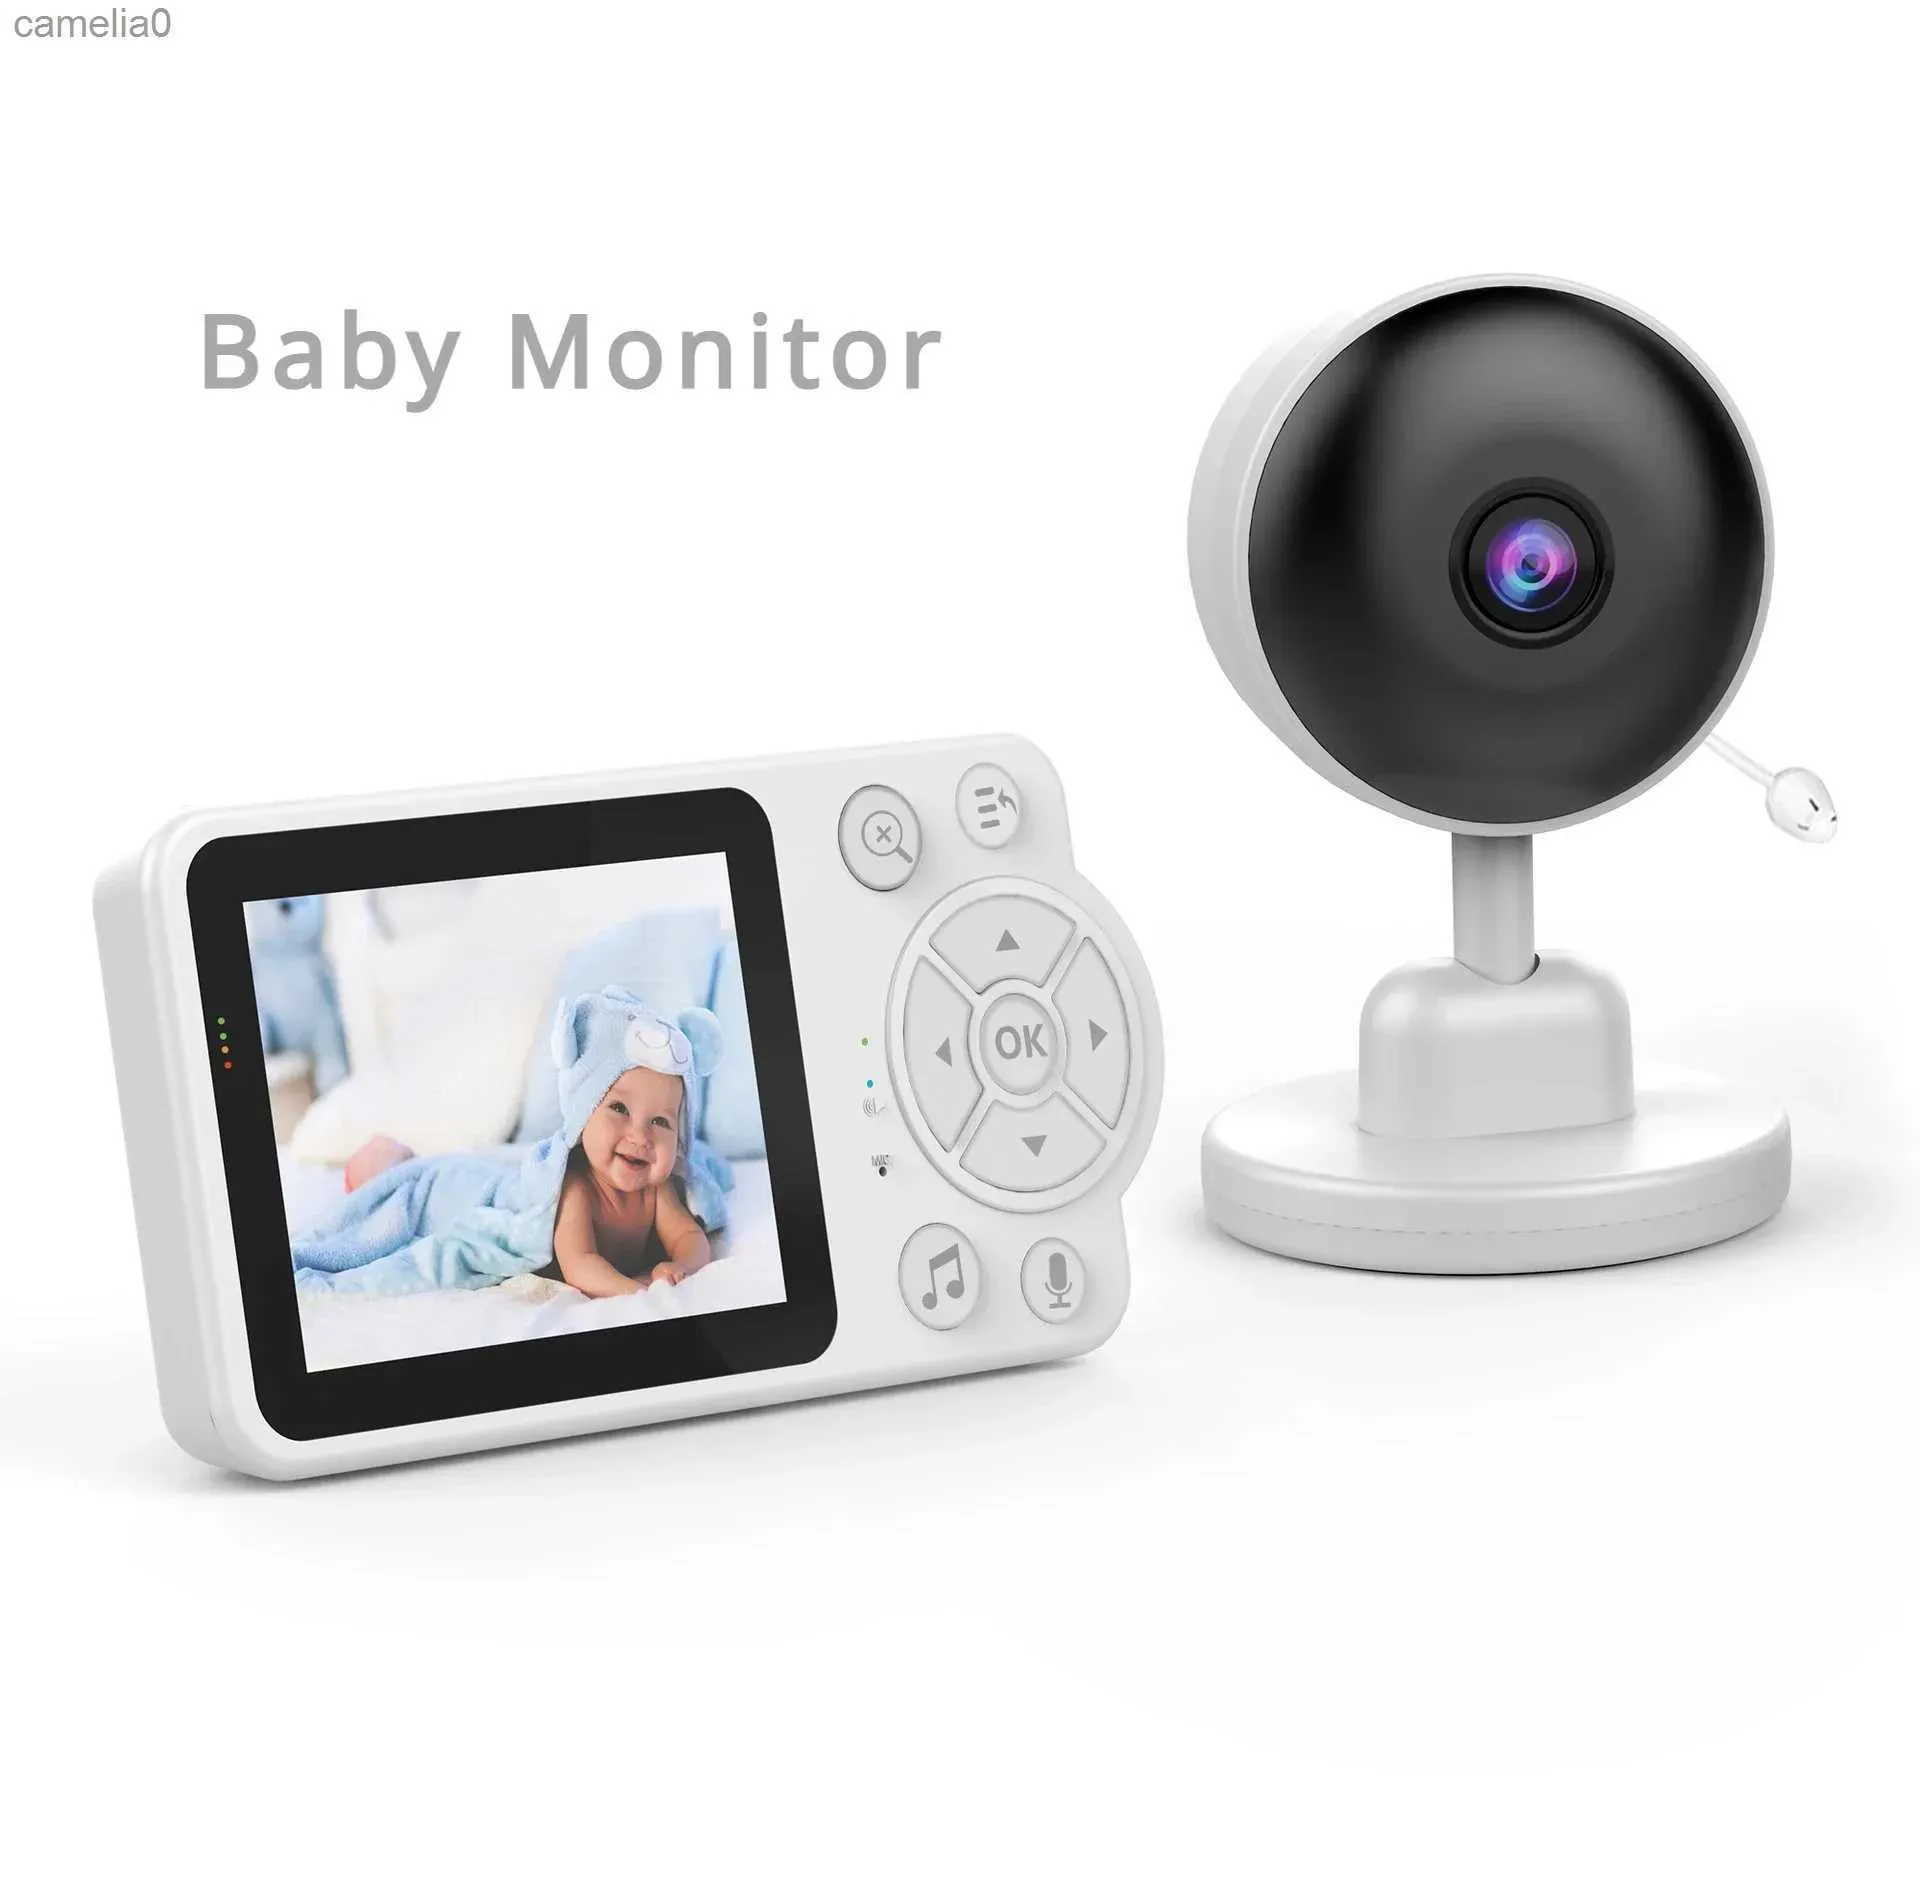 Baby surnommée Wireless Baby Monitor Protection de sécurité Protection audio bidirectionnelle Vision nocturne intérieure 2,8 pouces Écran TFT Video Intelligent Baby Camerac240412